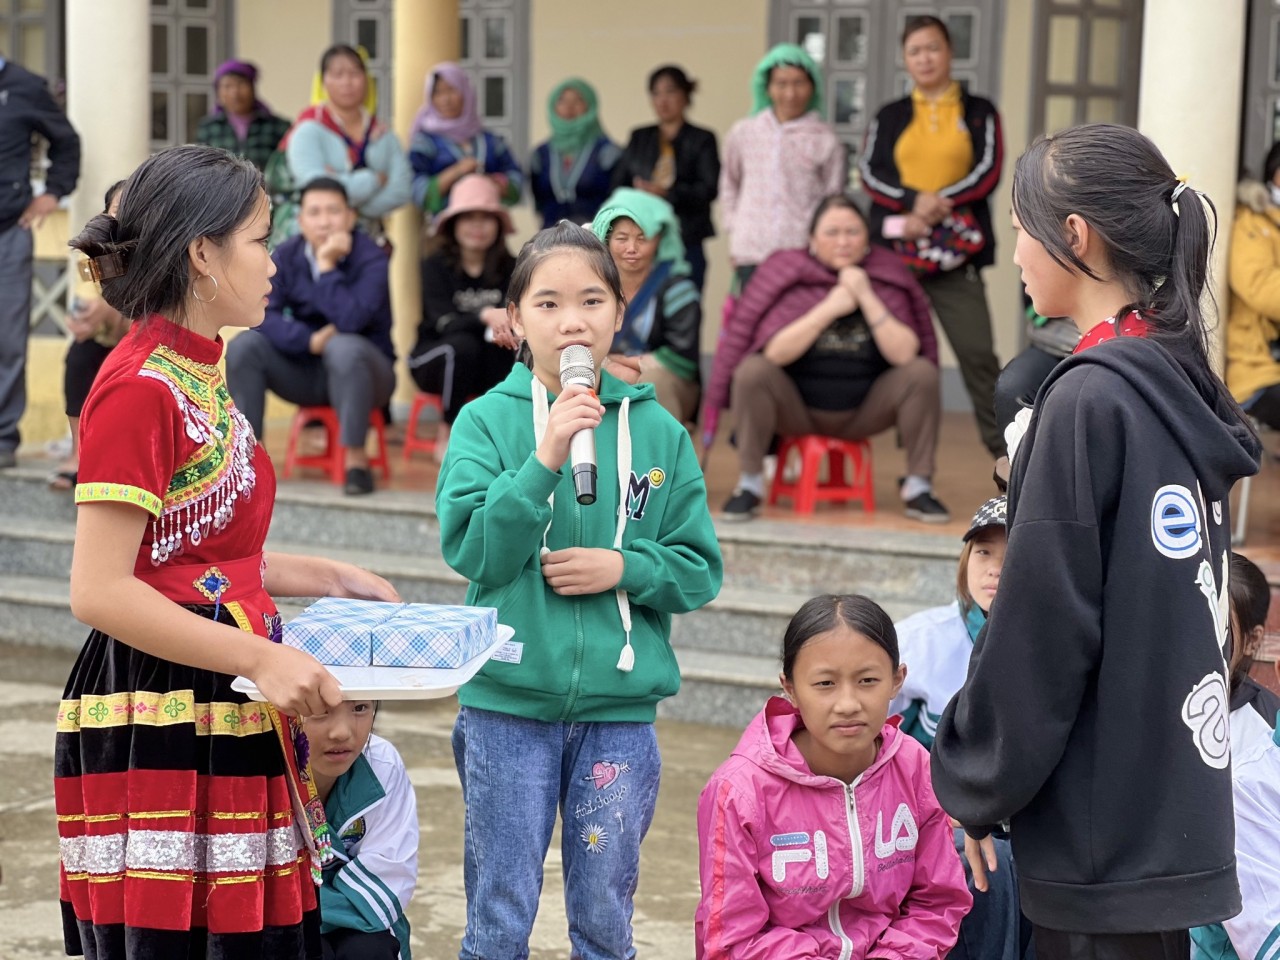 Chuỗi sự kiện trao quyền cho trẻ em gái năm 2022 tại Lai Châu, Quảng Bình